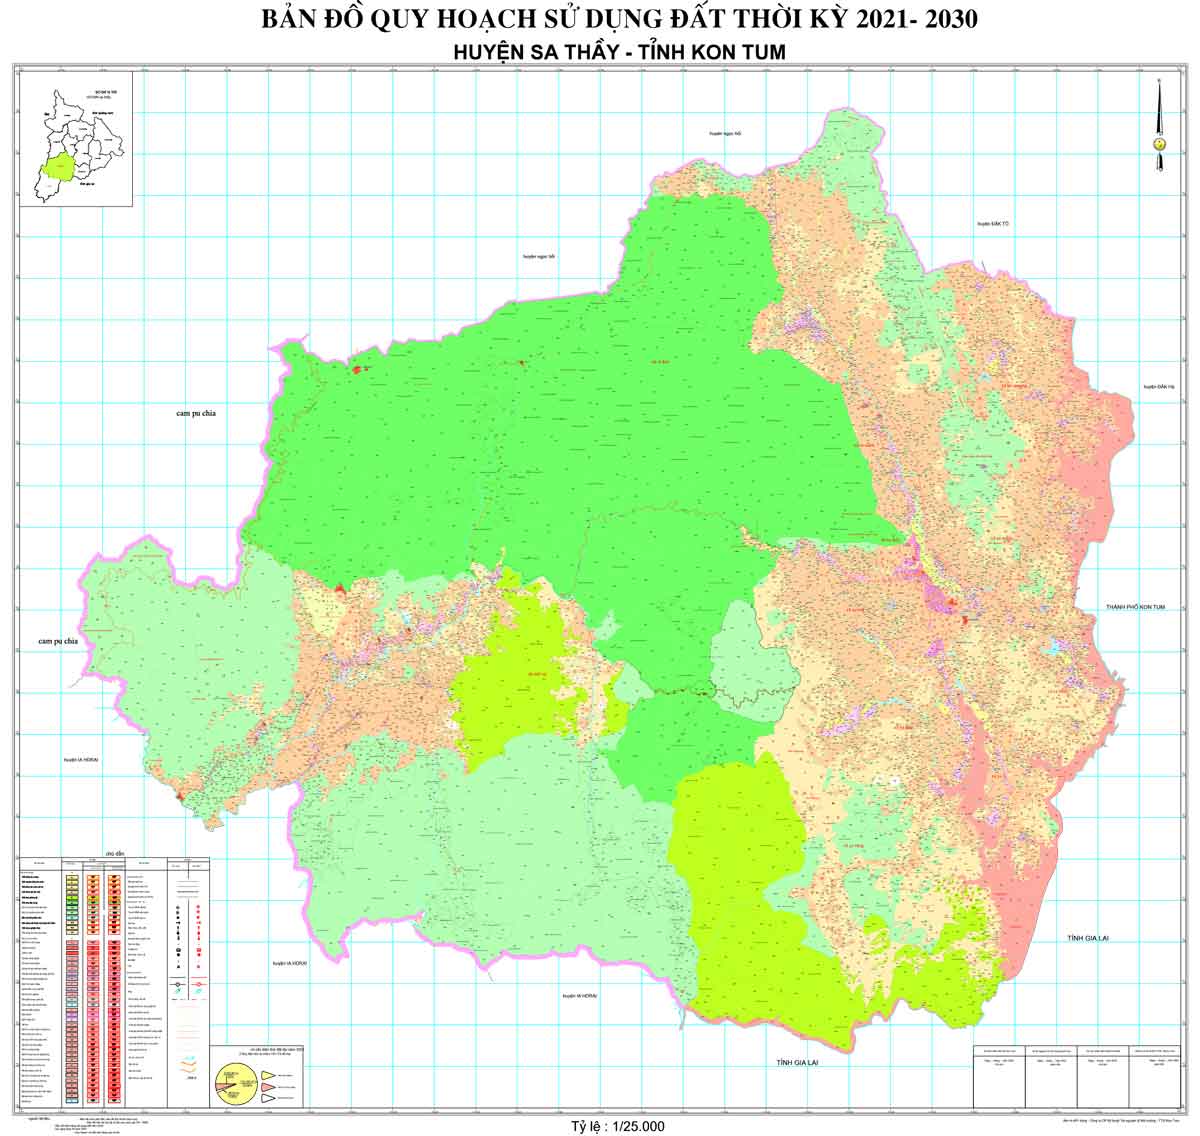 Bản đồ QHSDĐ huyện Sa Thầy đến năm 2030